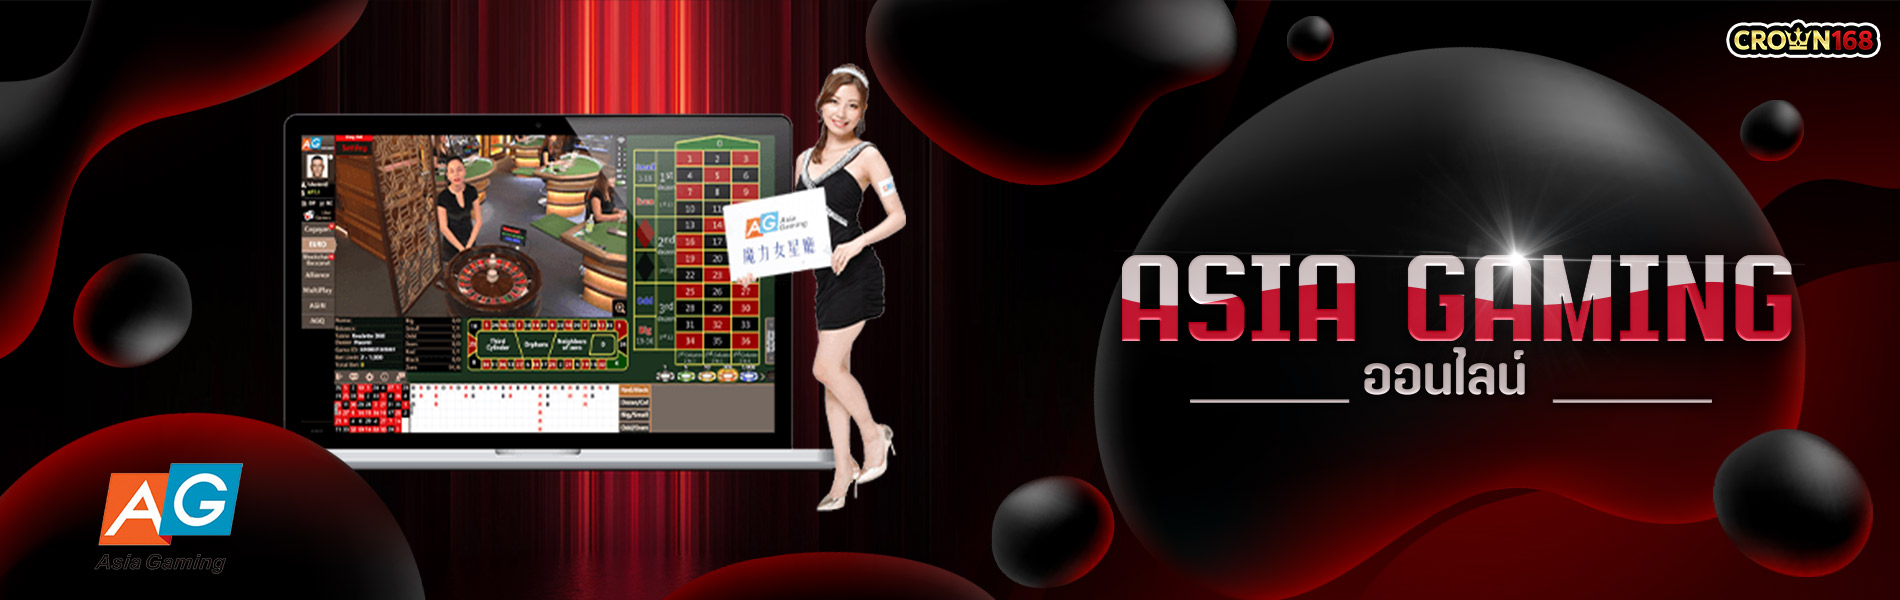 Asia-Gaming